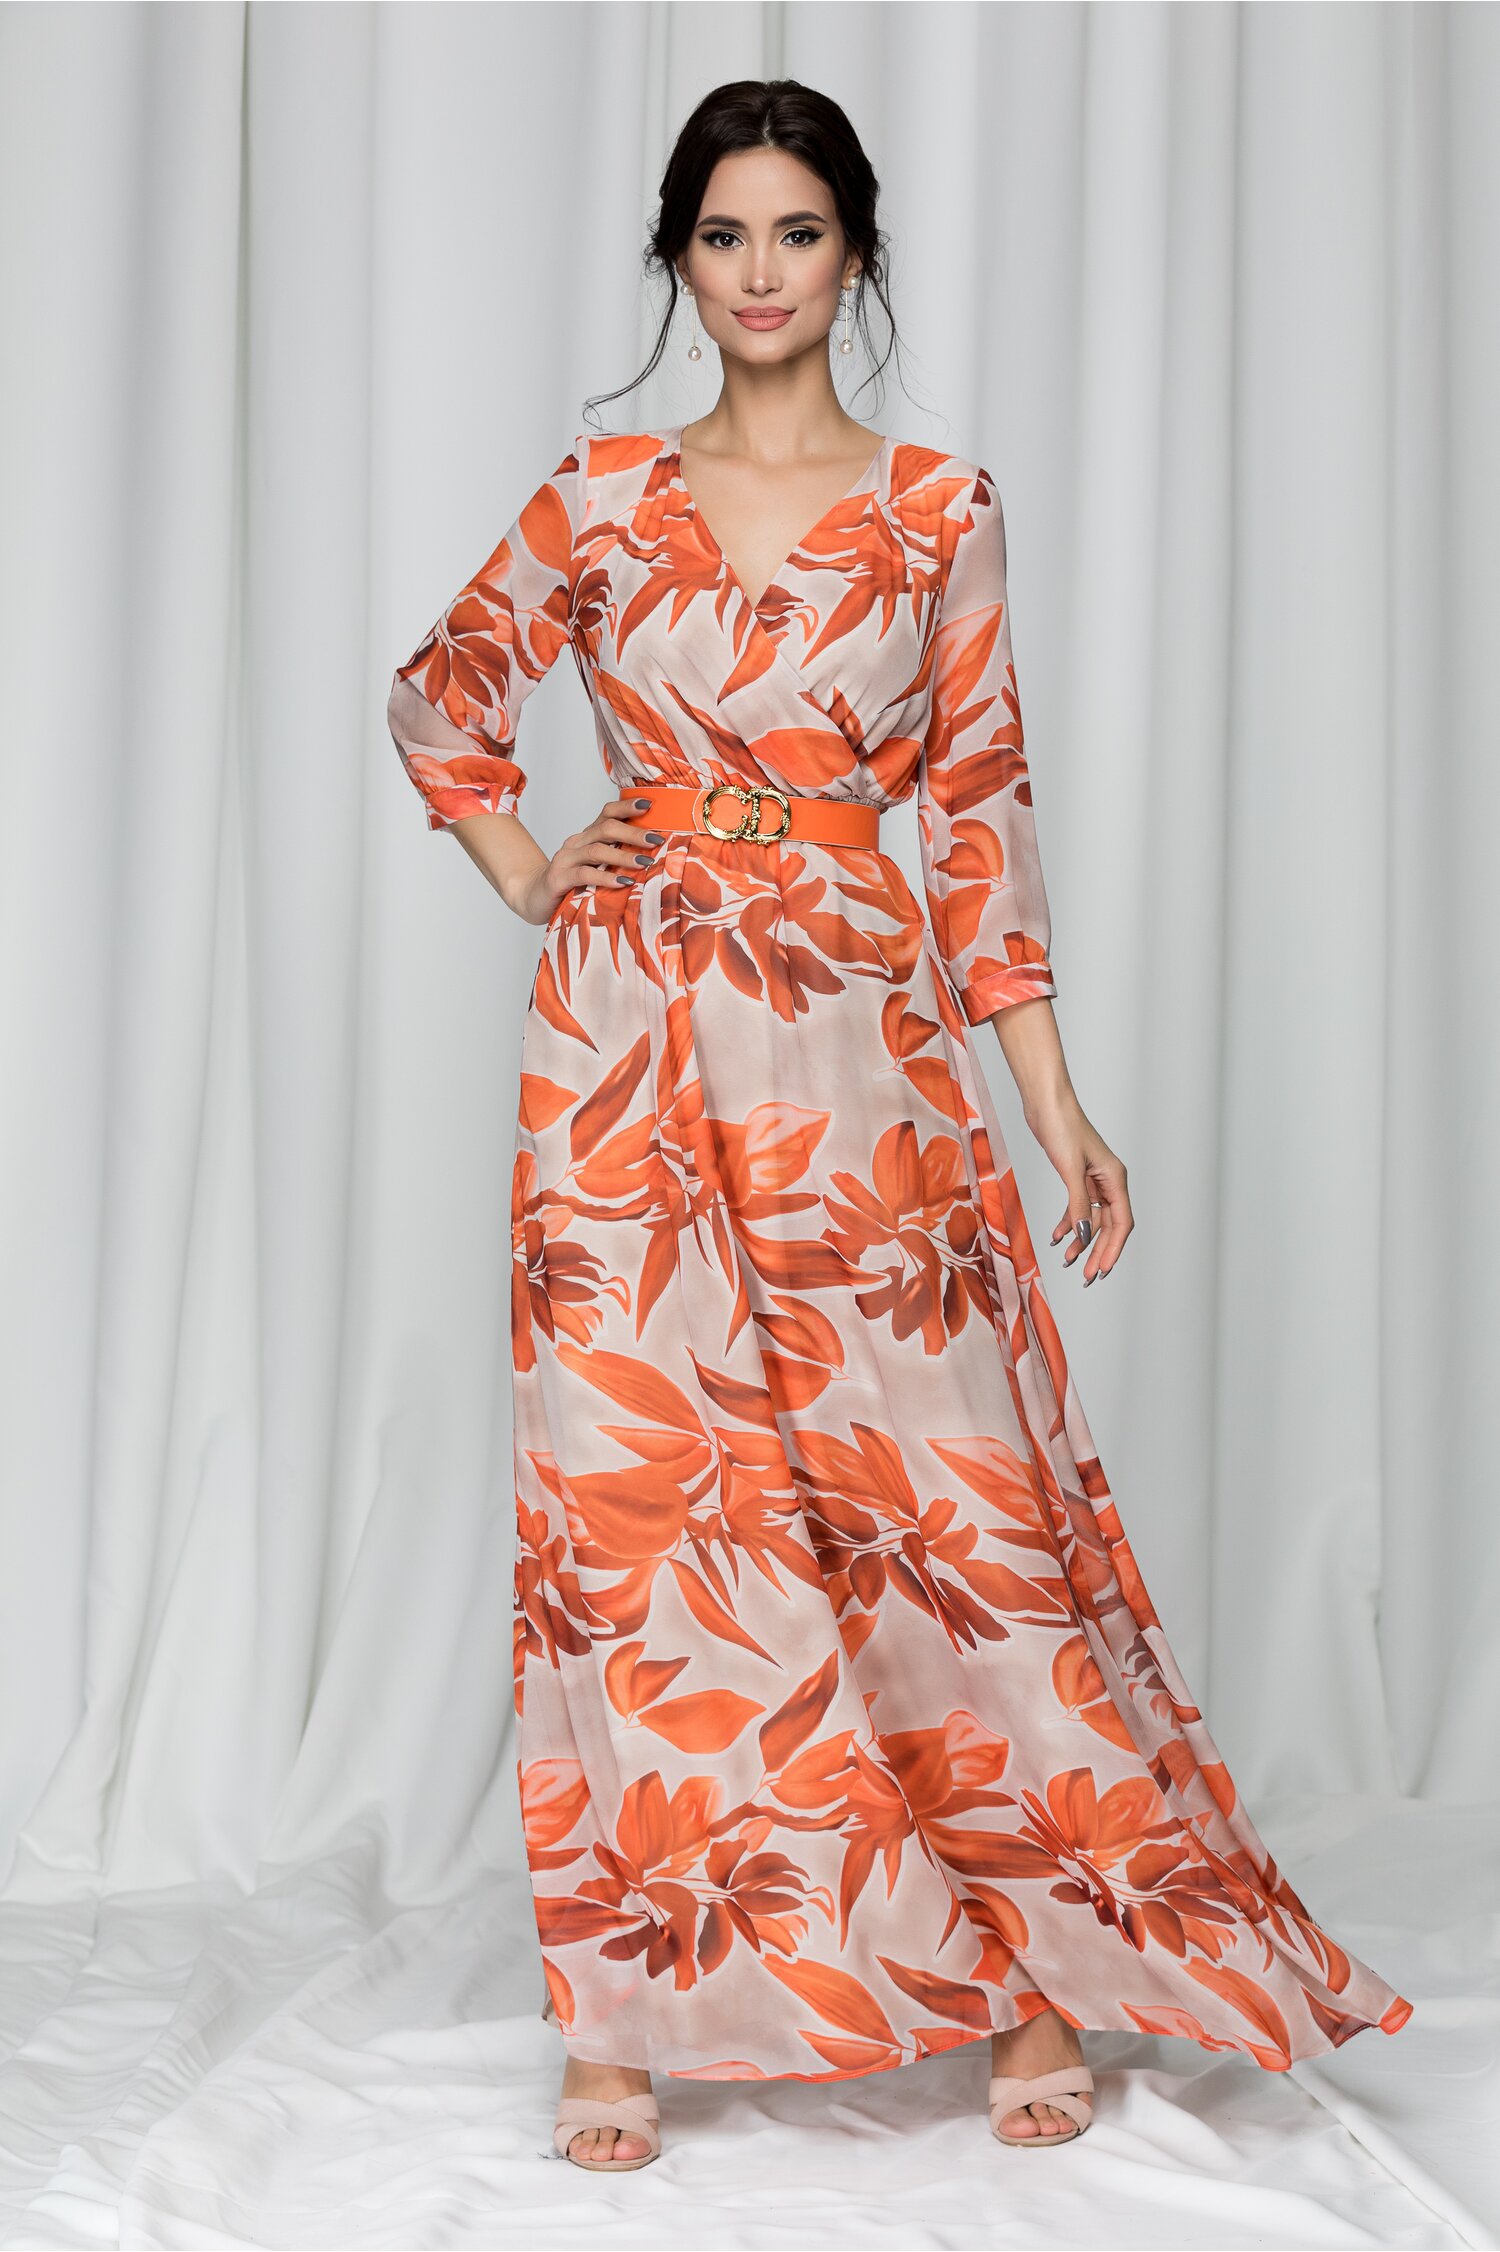 Rochie Ava lunga cu imprimeu floral portocaliu